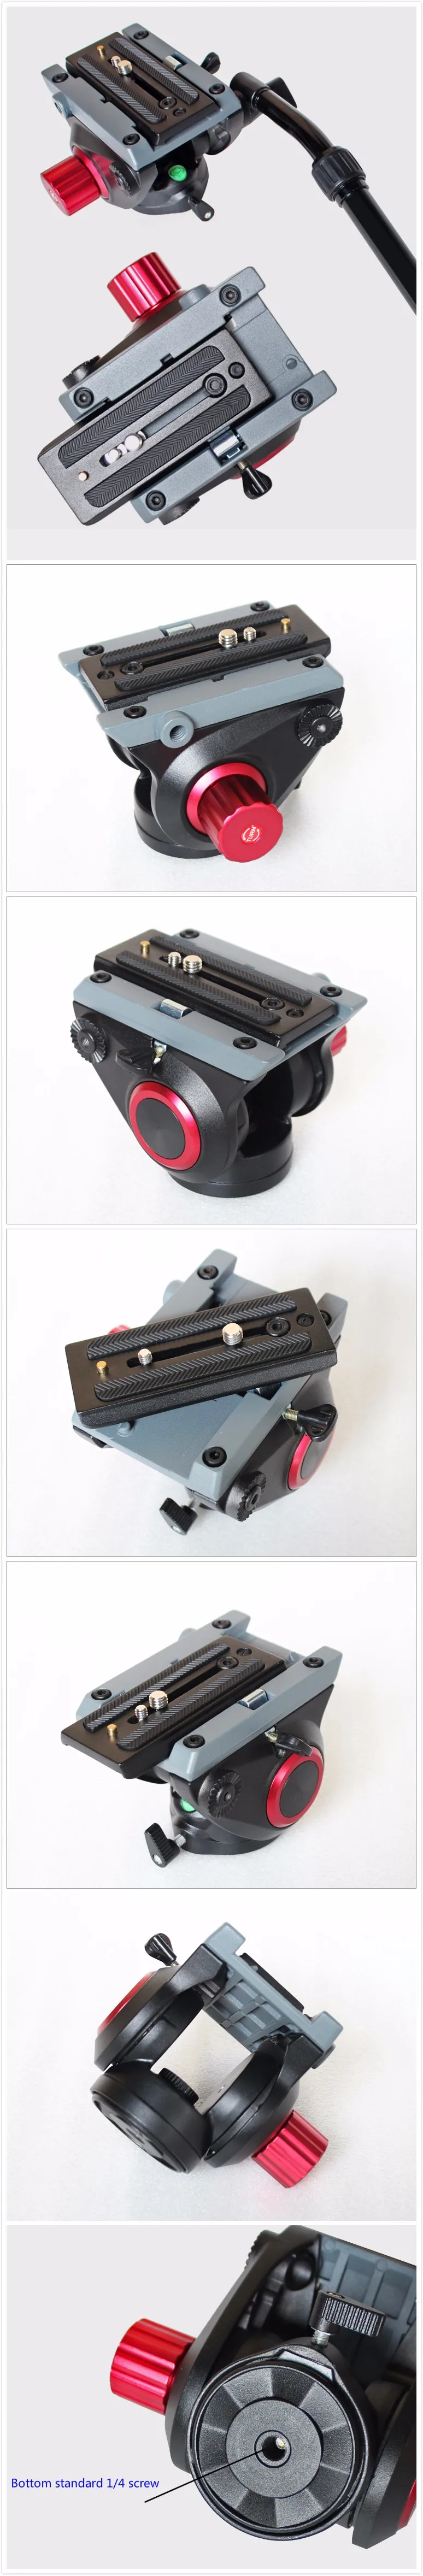 Видеокамера демпфирующая жидкость Штативная головка гидравлическая головка для слайдера монопод DSLR Камера съемка видео MTX718 для Manfrotto 500AH